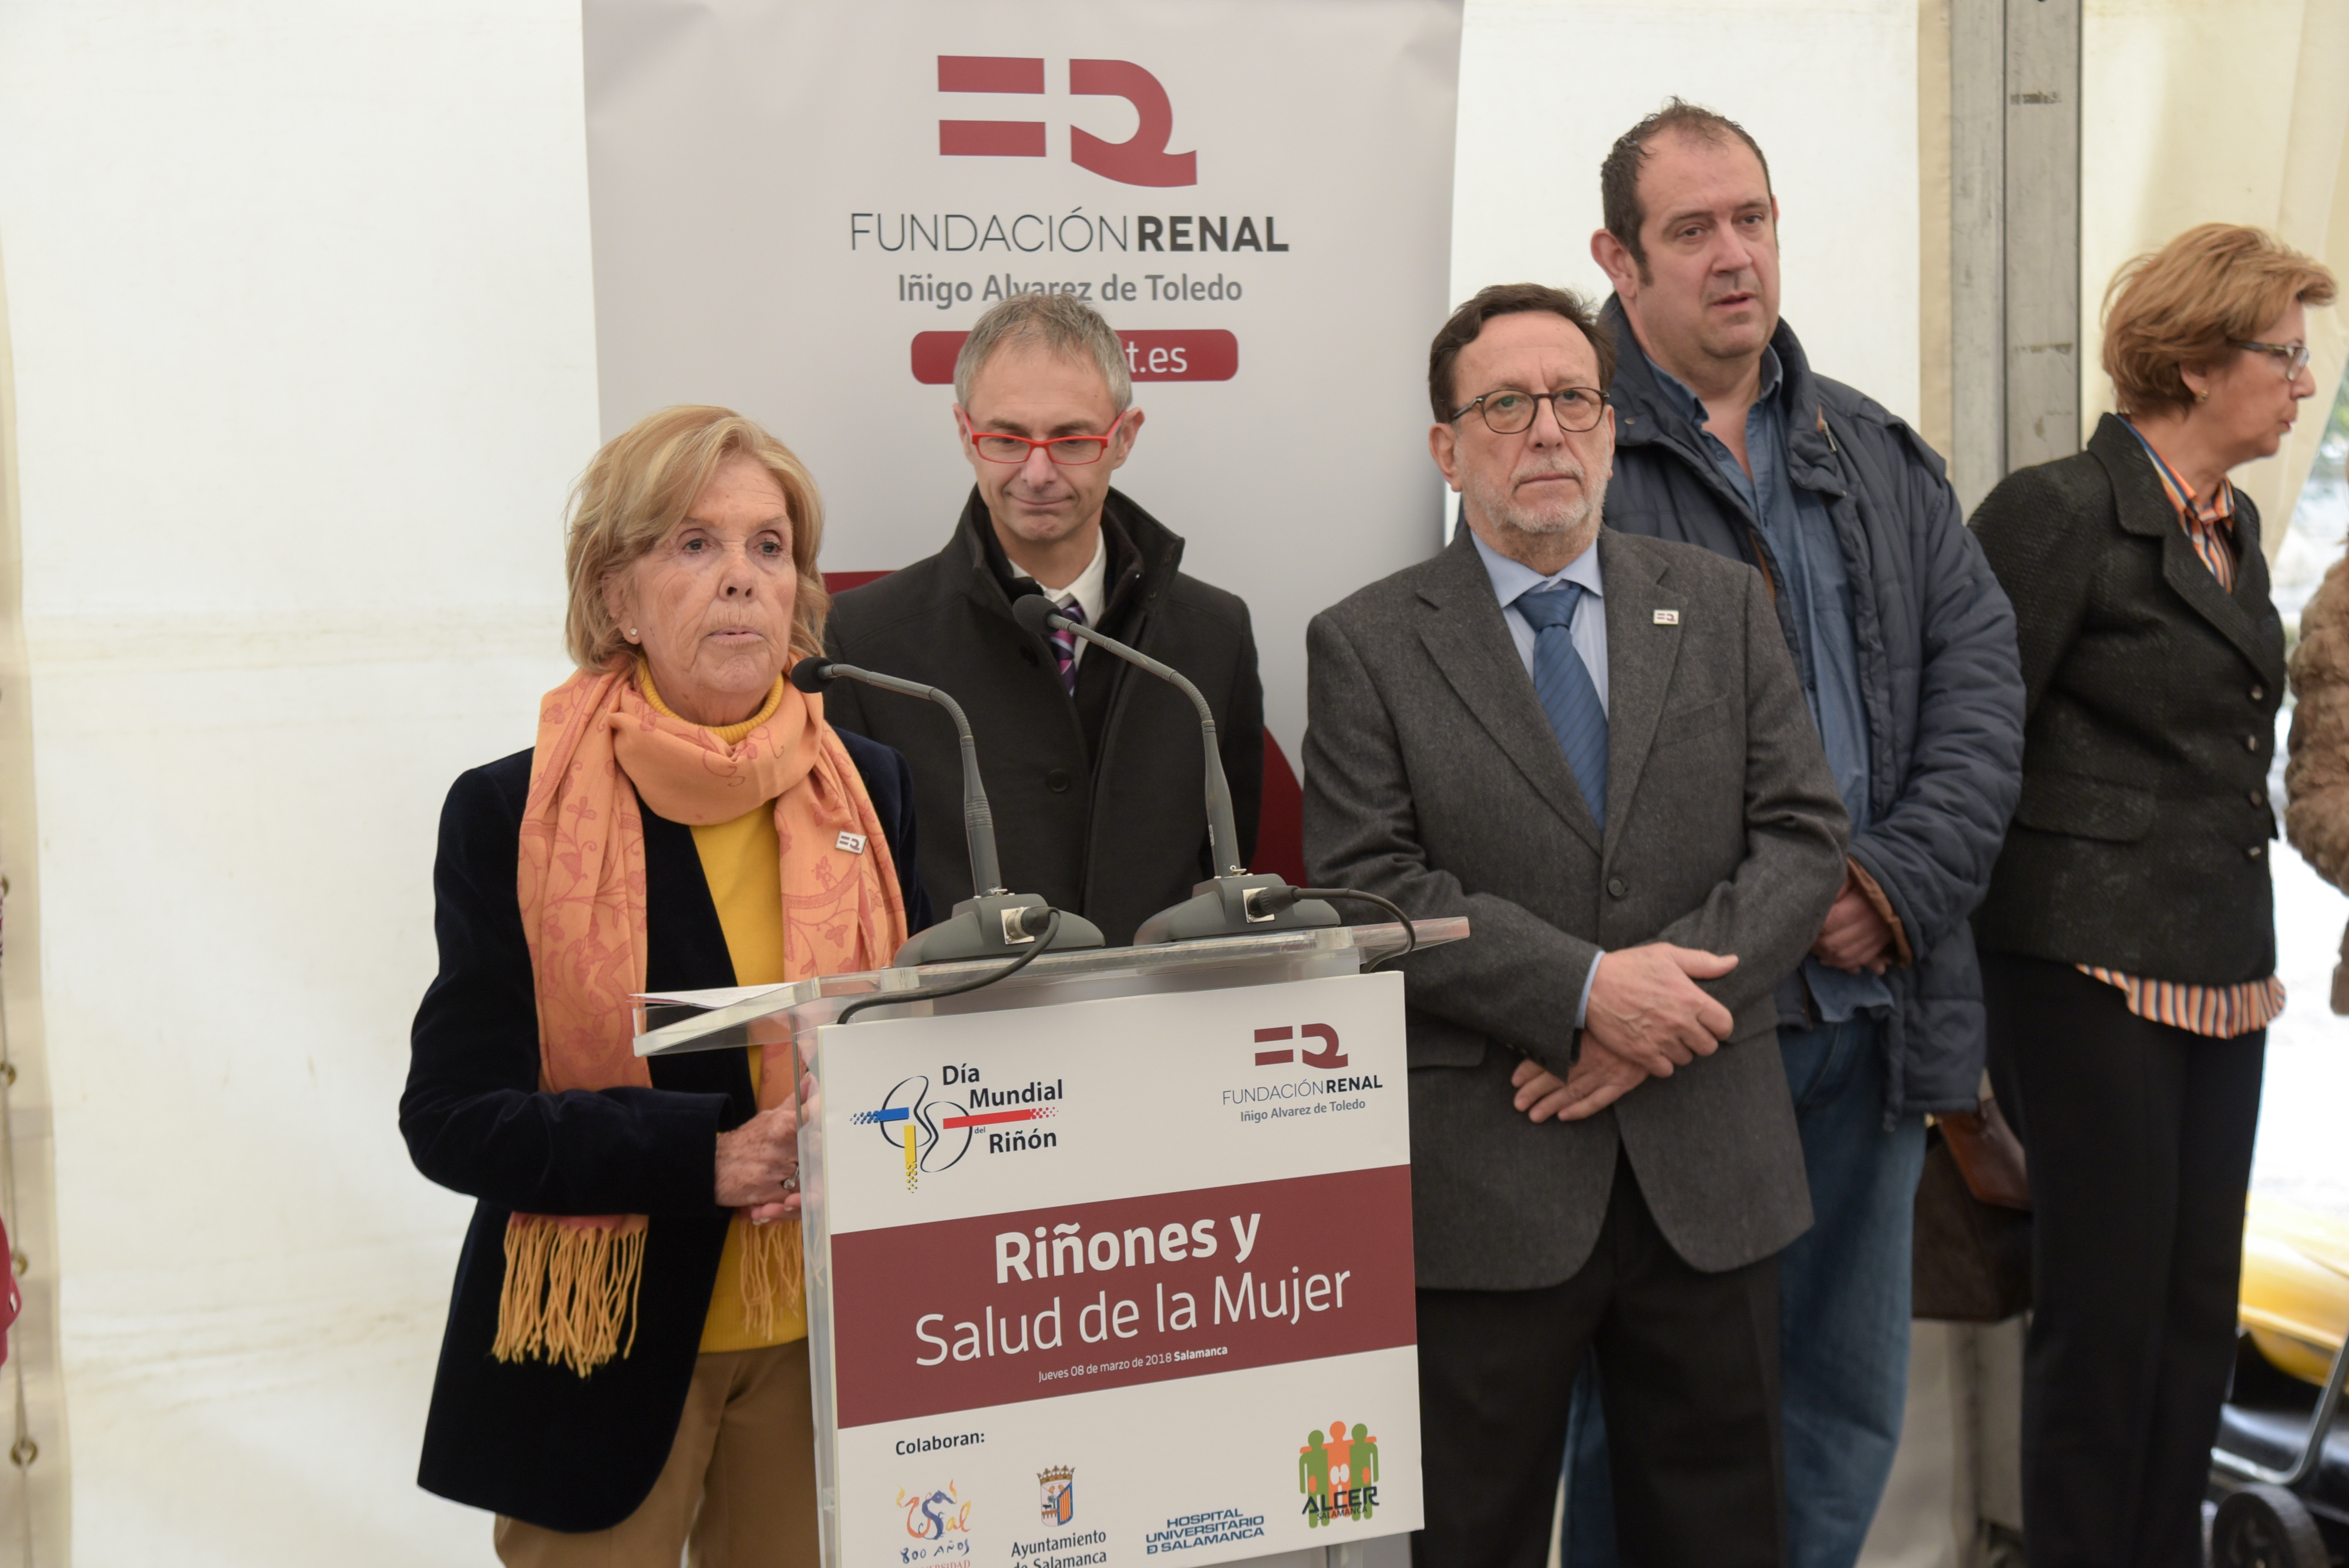 La Universidad de Salamanca participa en el Día Mundial del Riñón organizado por la Fundación Renal Íñigo Álvarez de Toledo